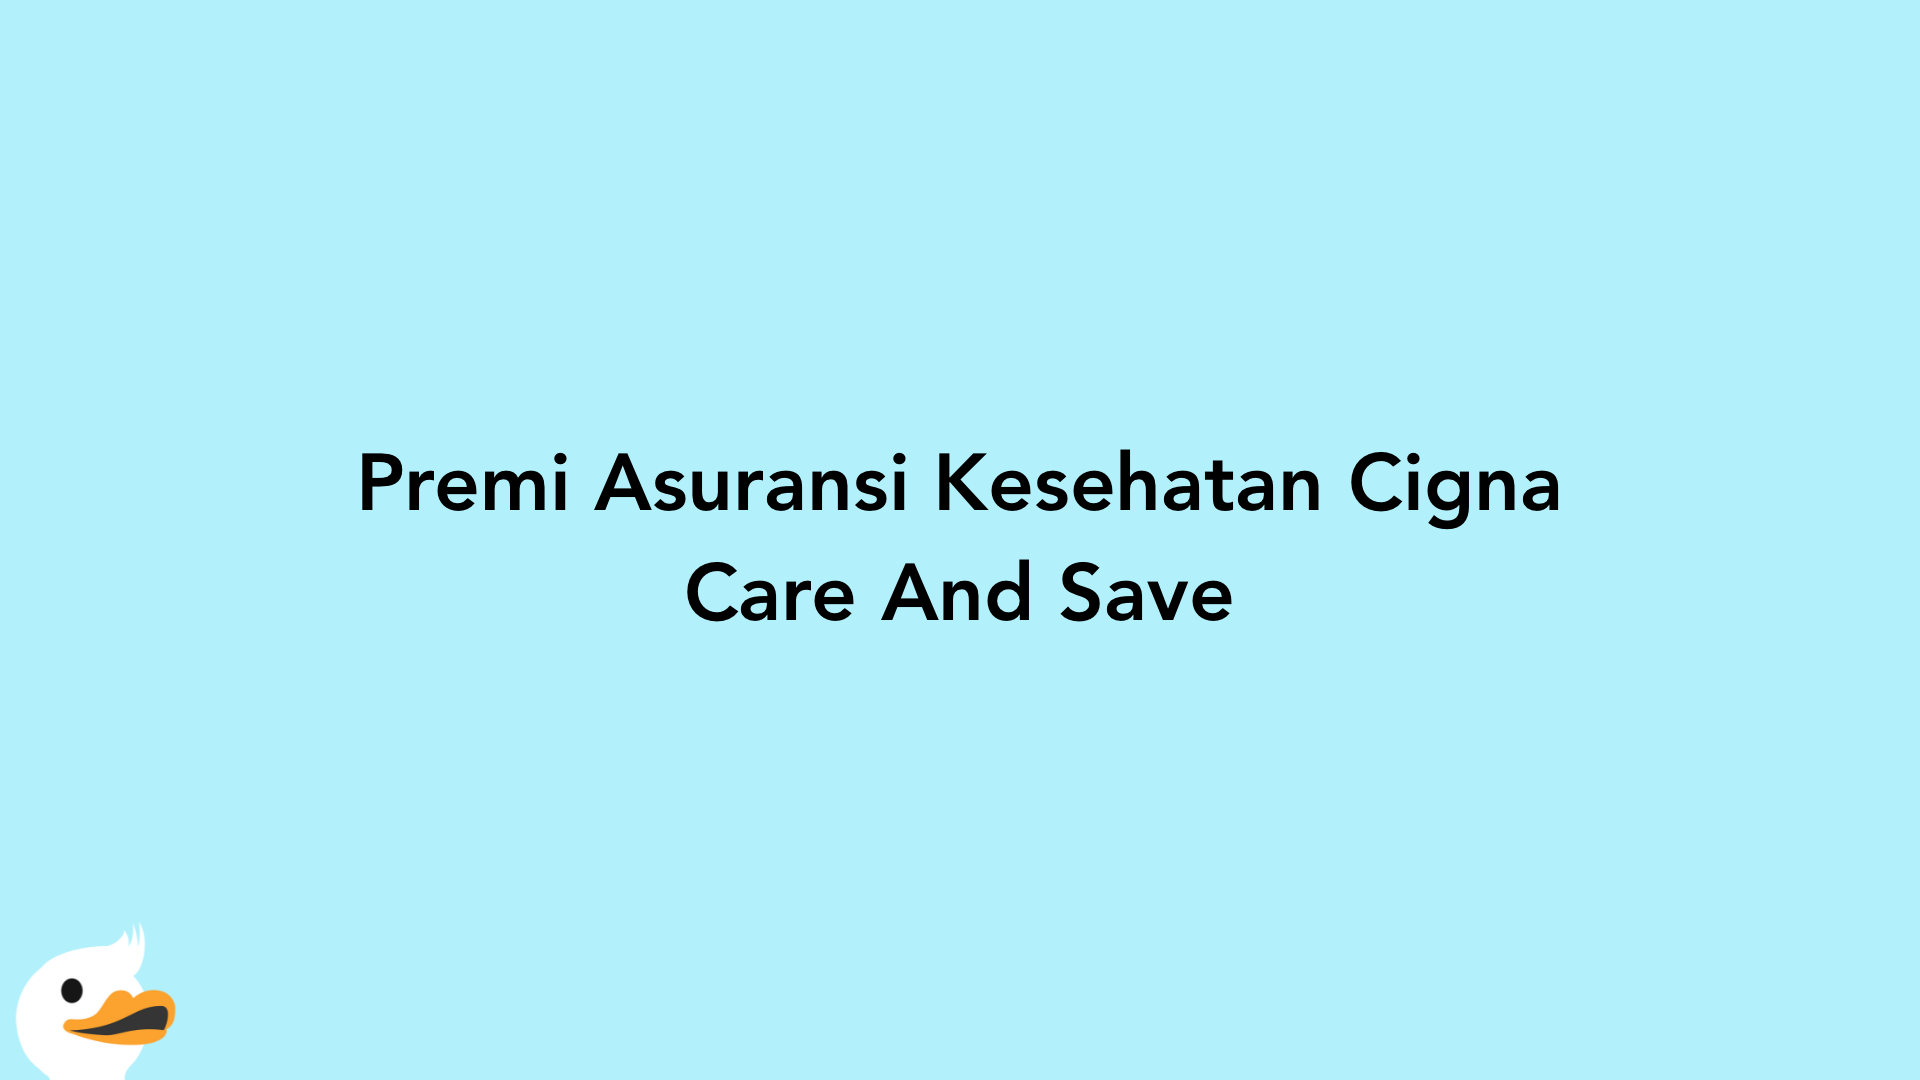 Premi Asuransi Kesehatan Cigna Care And Save